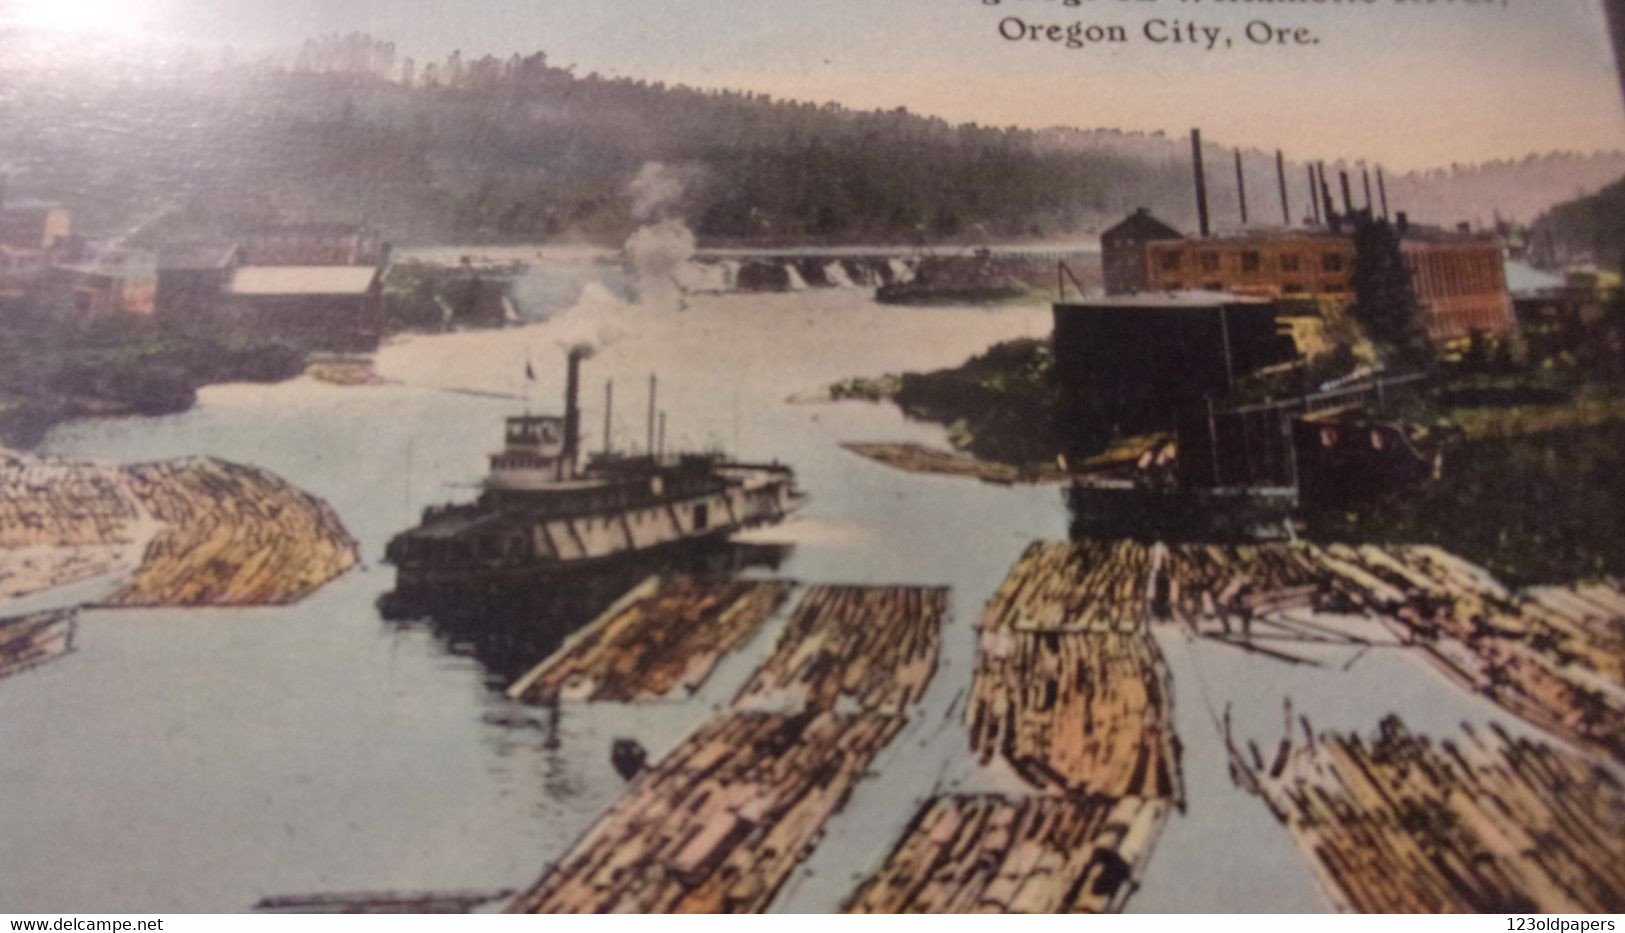 US OREGON  1921 FLOATING LOGS ON WILLAMETTE RIVER OREGON CITY ORE  STAMPS - Autres & Non Classés